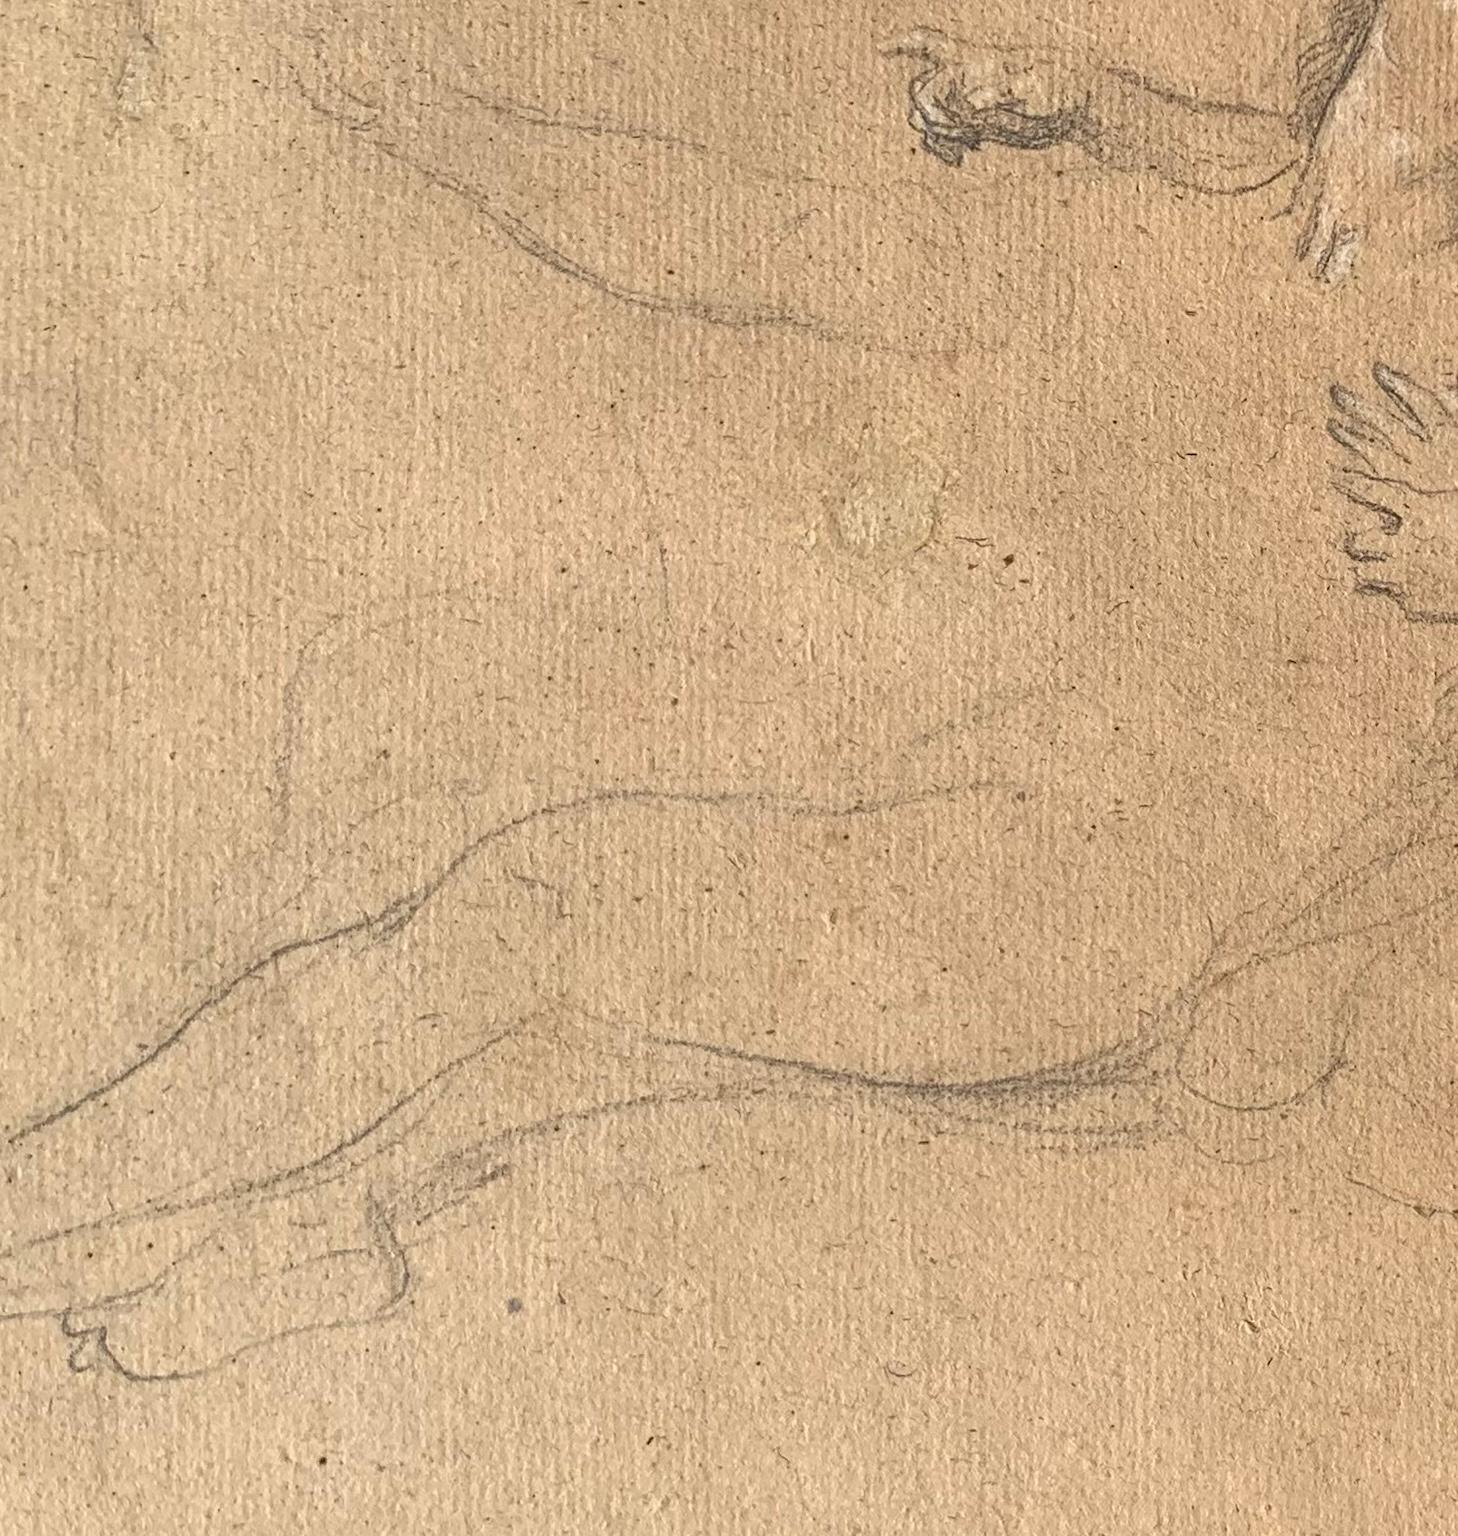 Disegno figurativo del romanticismo fiorentino matita su carta del XIX secolo For Sale 1